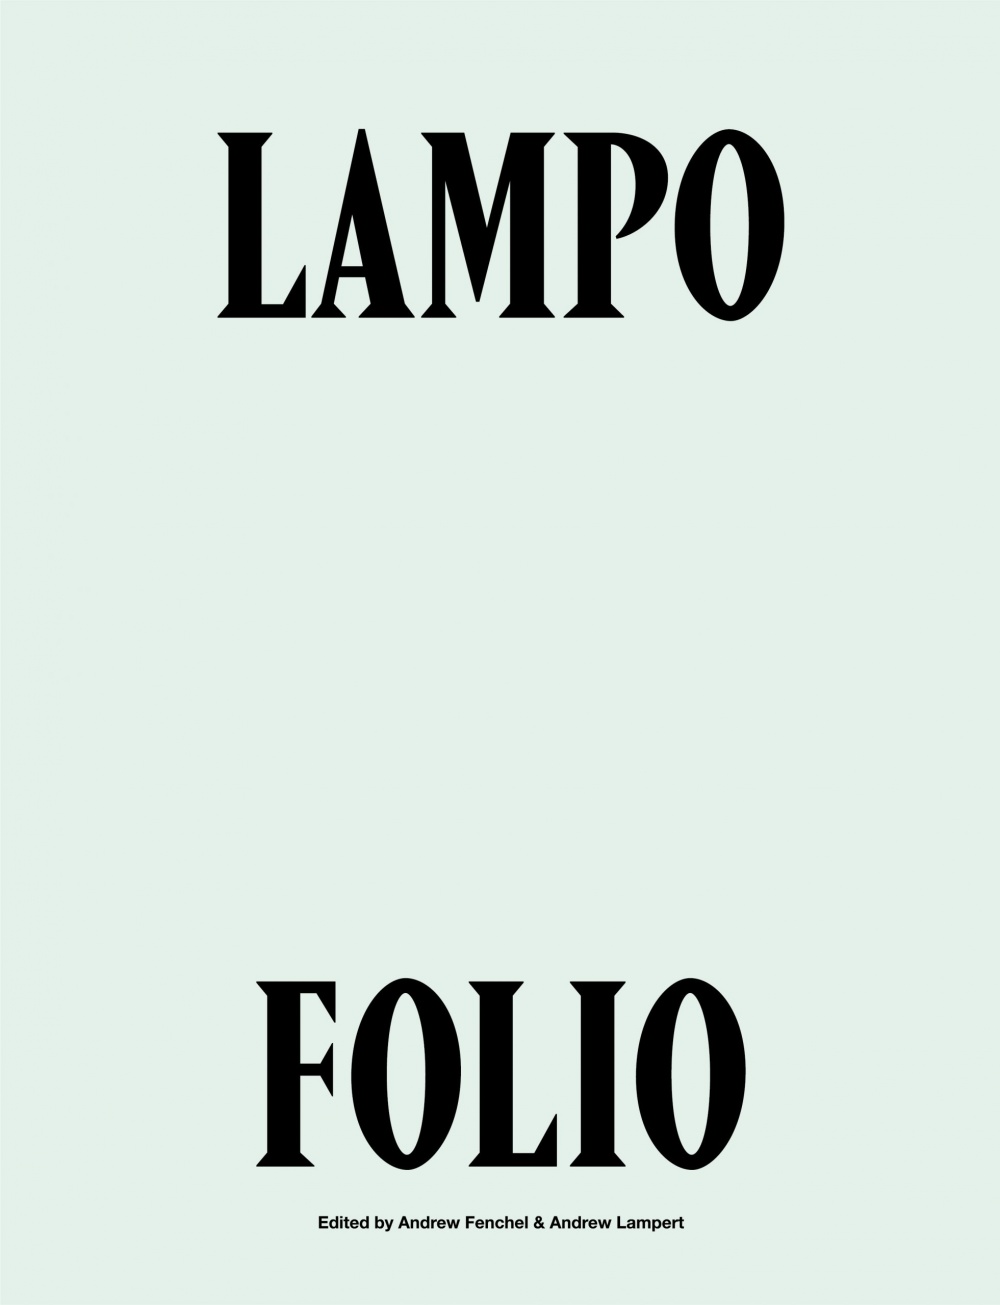 Lampo FOLIO